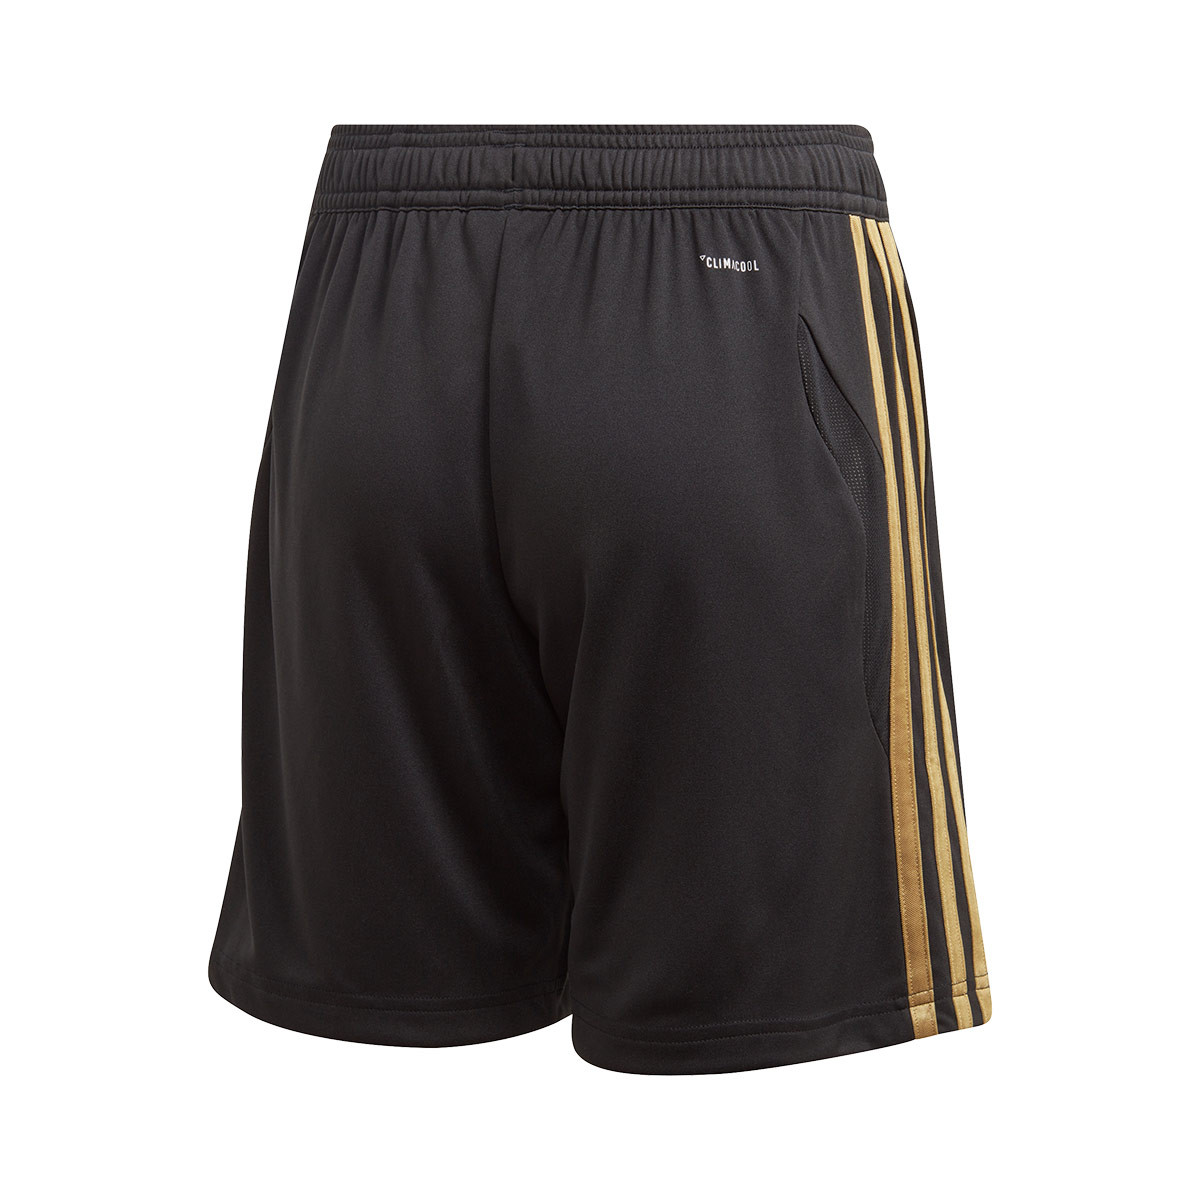 adidas gold shorts